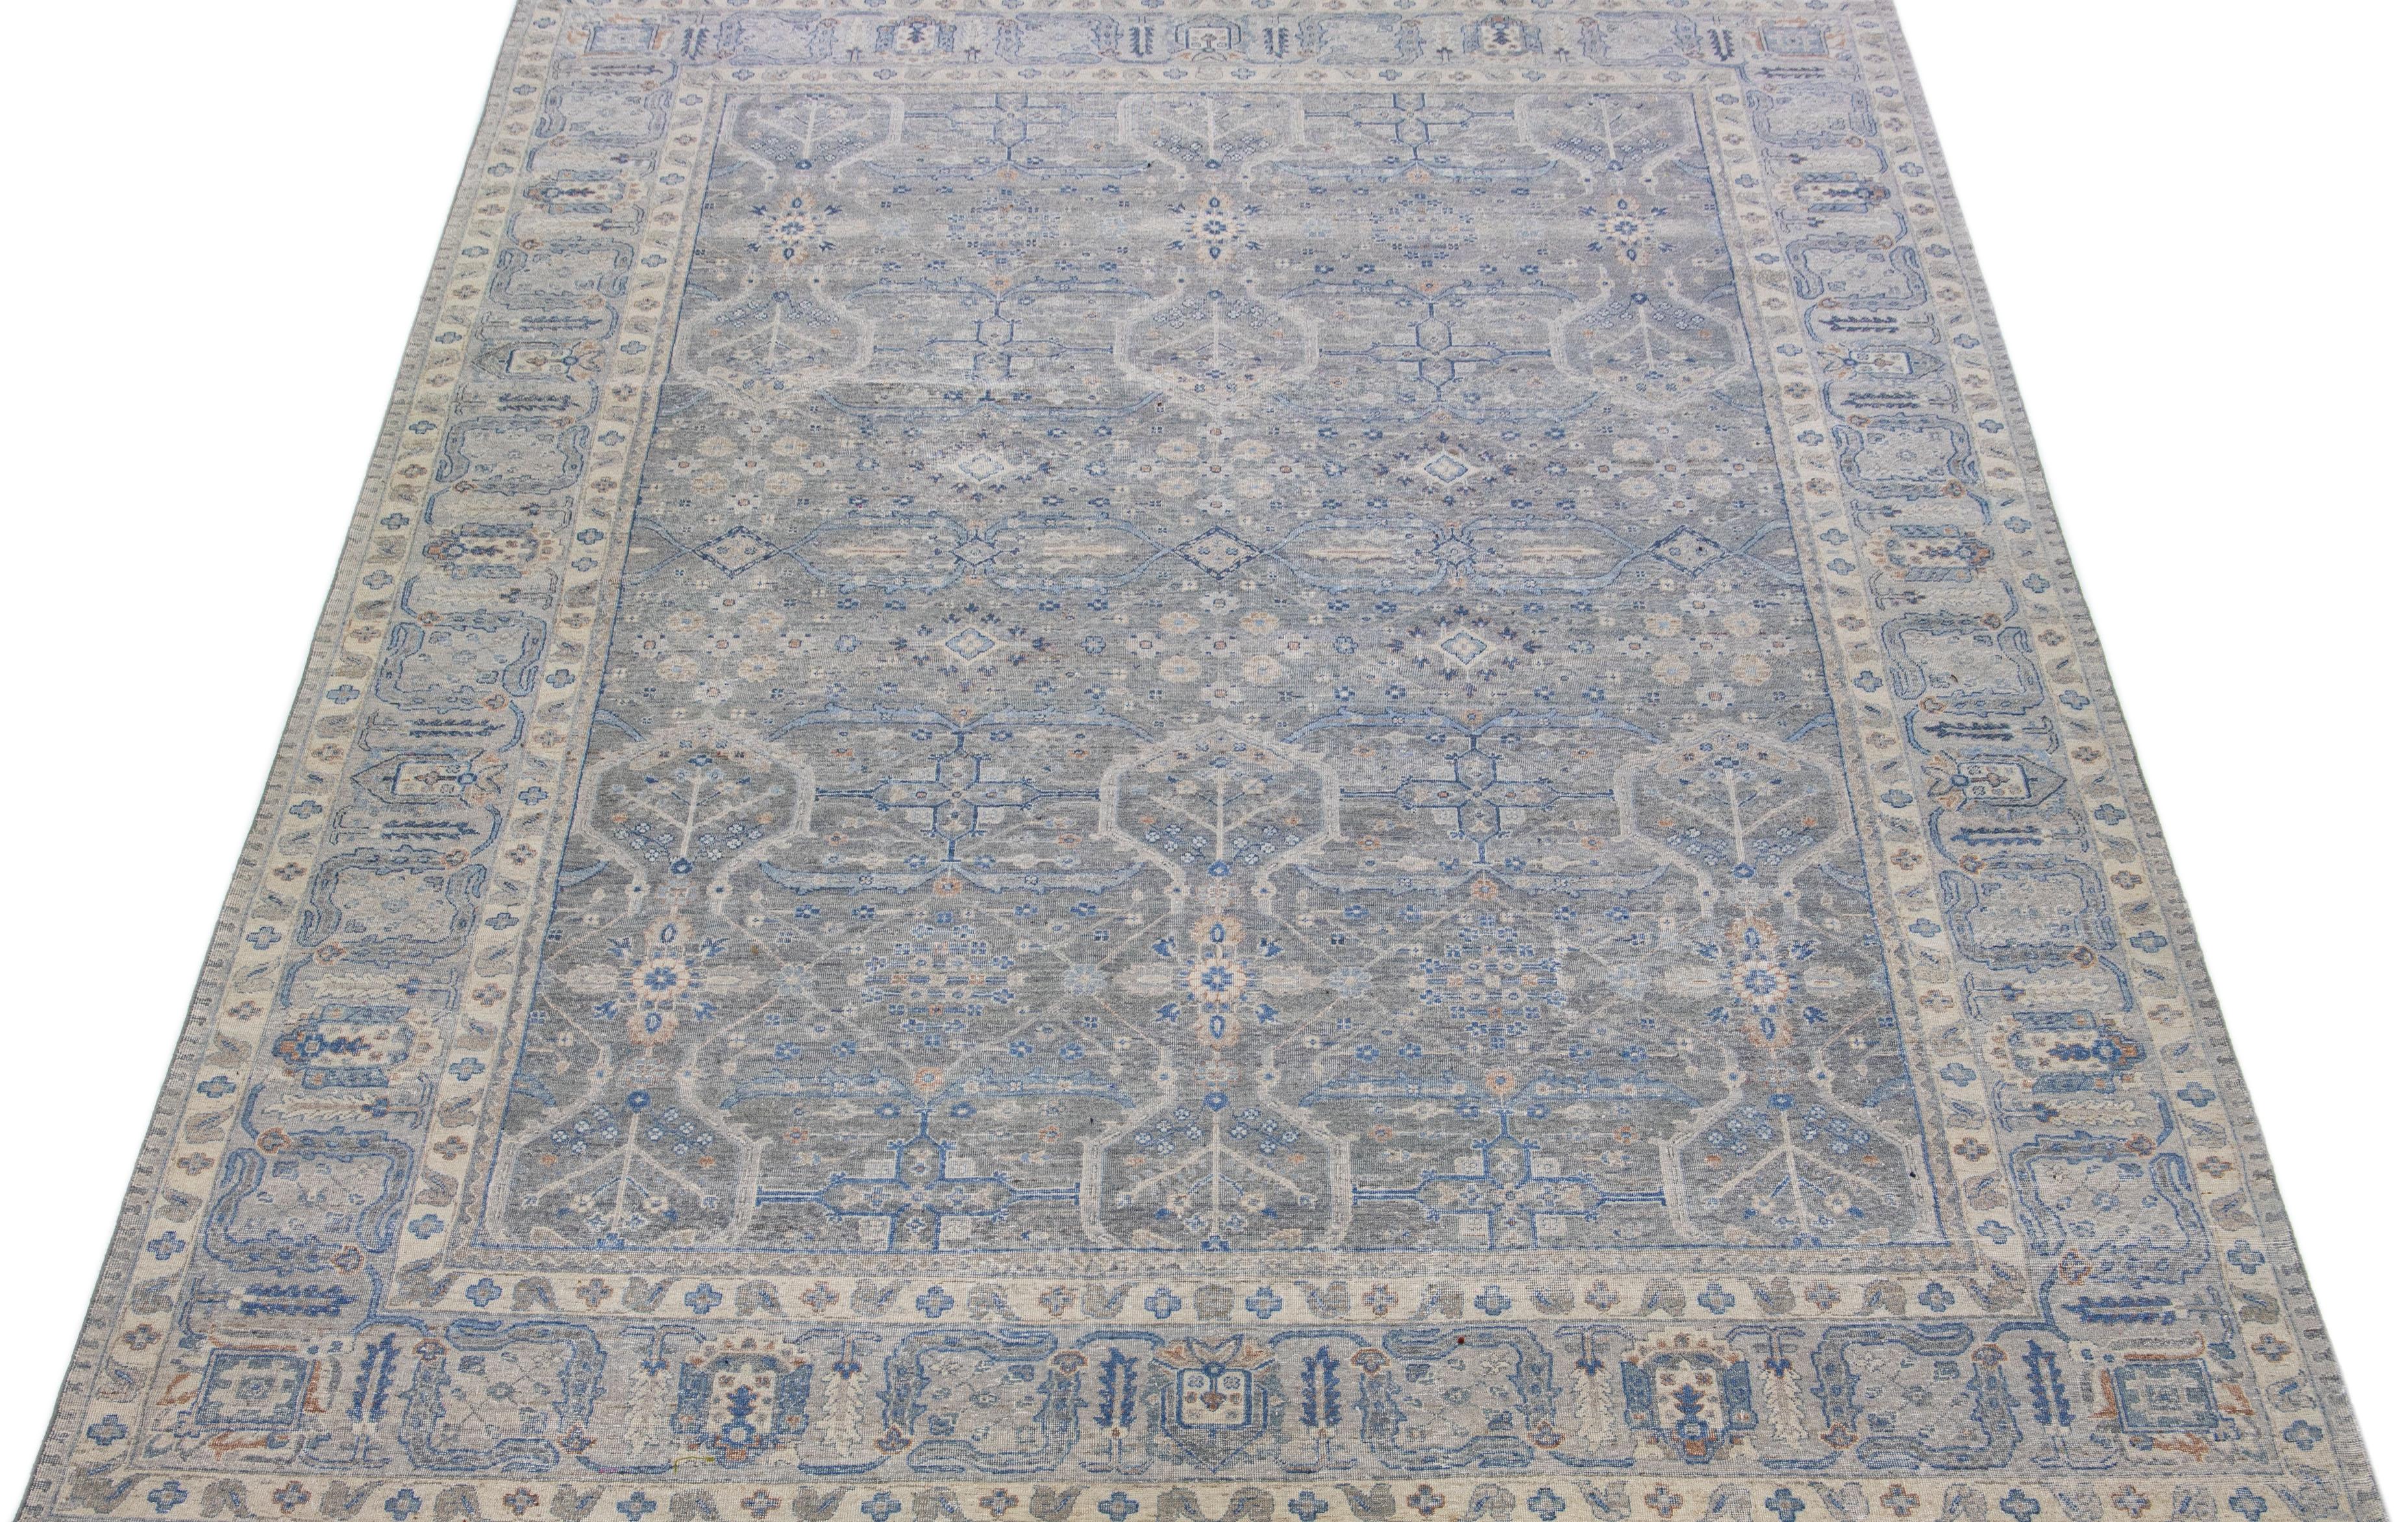 Die Artisan-Linie von Apadana ist eine Neuinterpretation antiker Teppiche, die auf elegante Weise eine auffällige antike Ästhetik in einen Raum bringt. Diese Teppichserie ist ausgesprochen einzigartig und zeigt, wie ein antiker Teppich aussehen